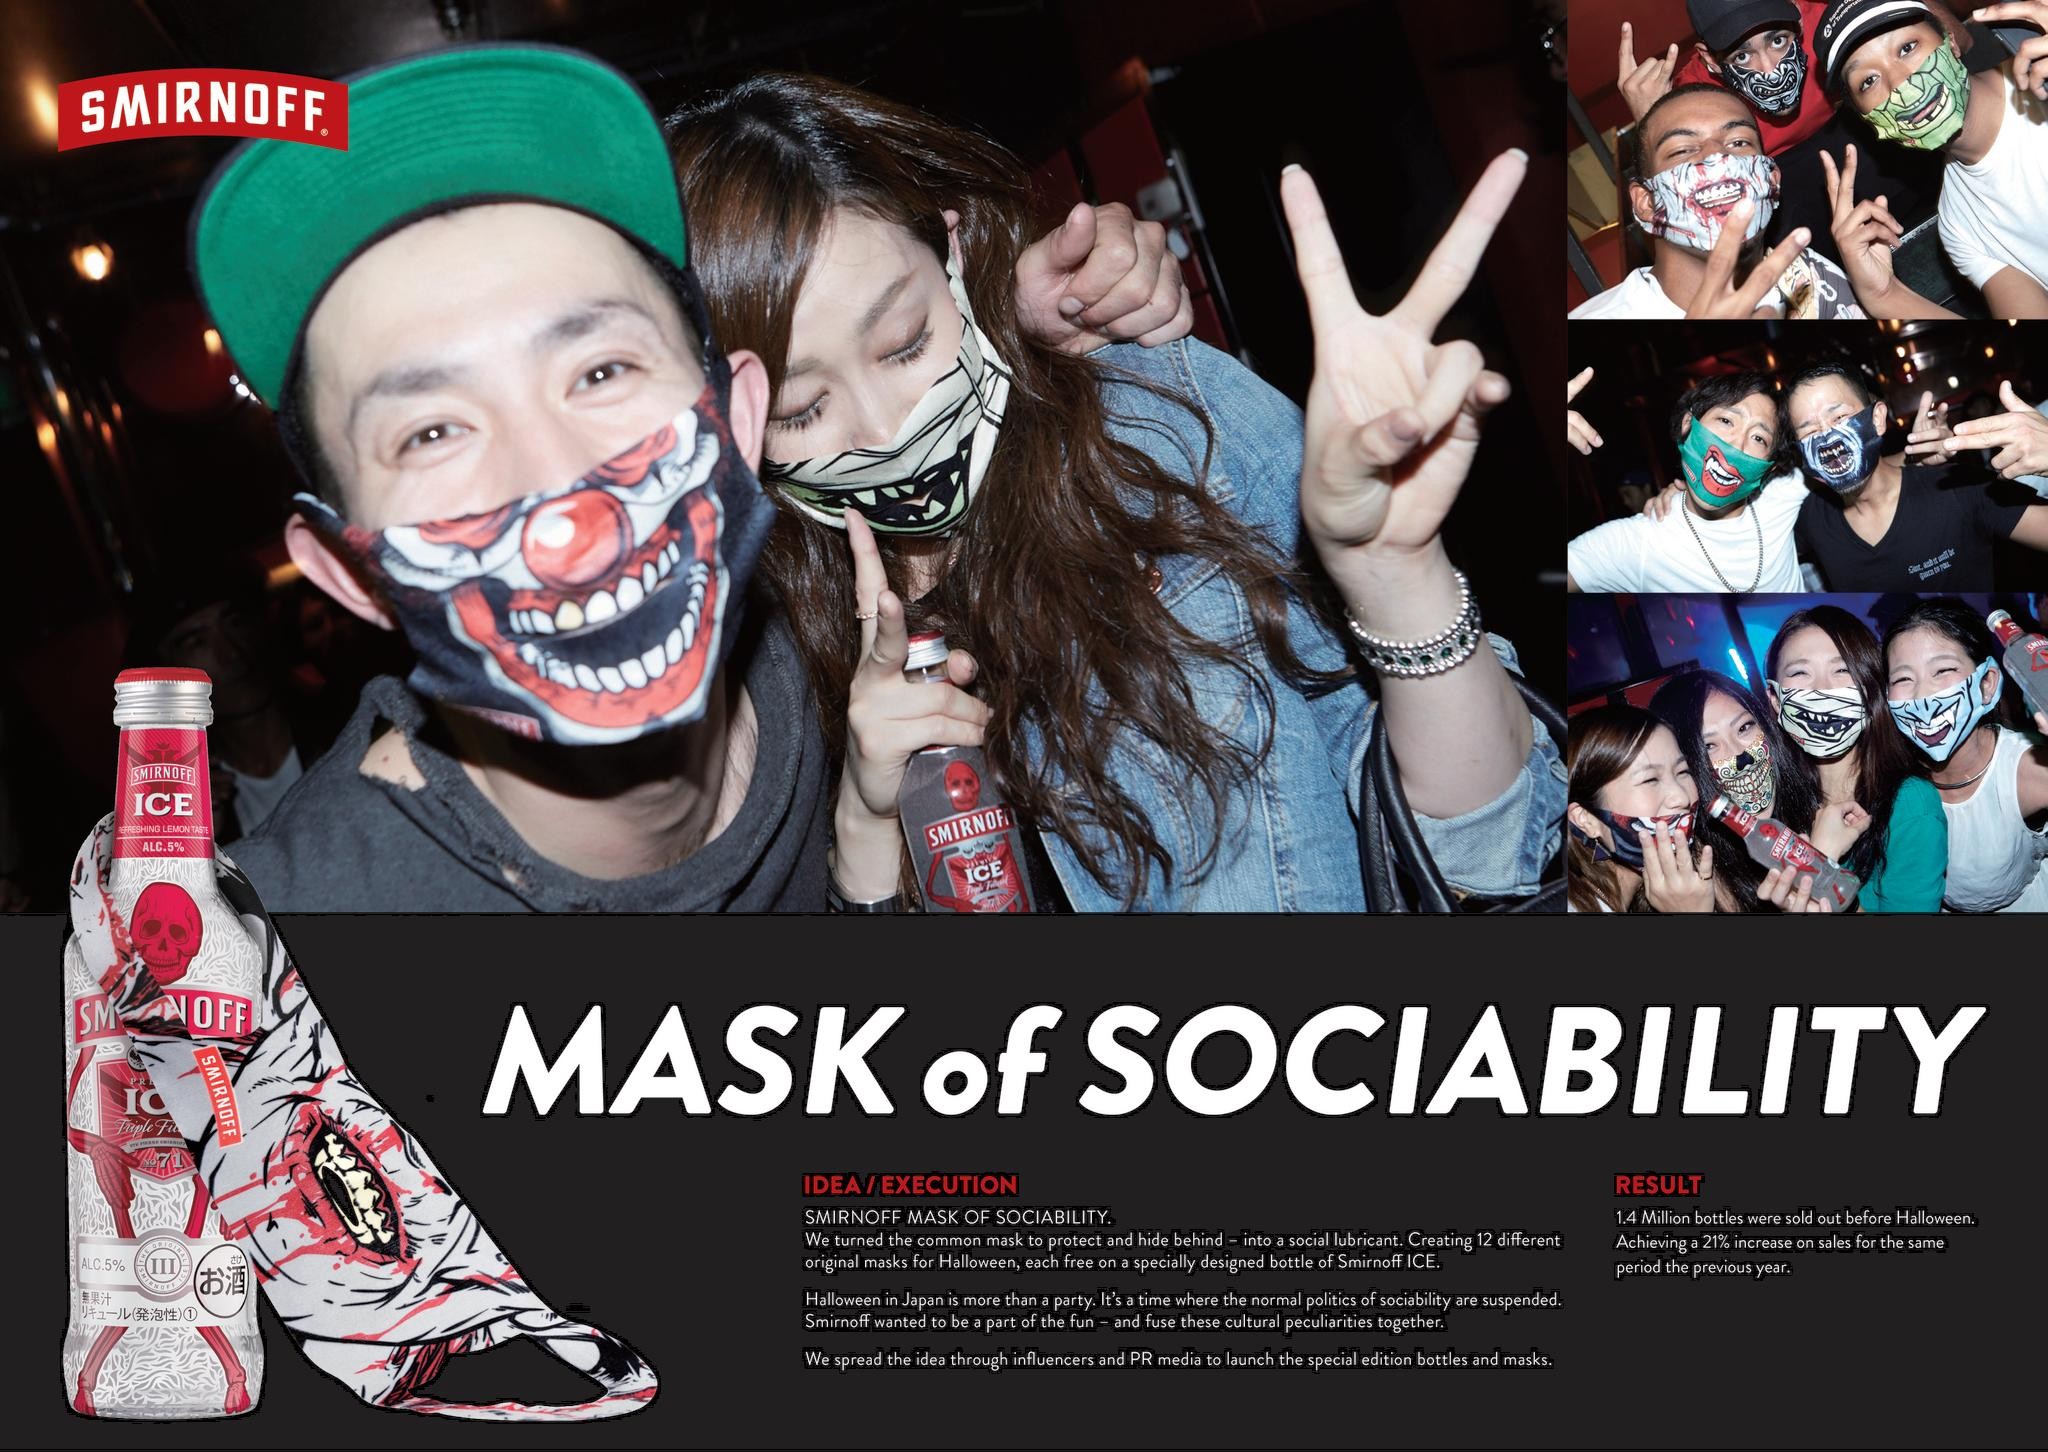 Mask of Sociability